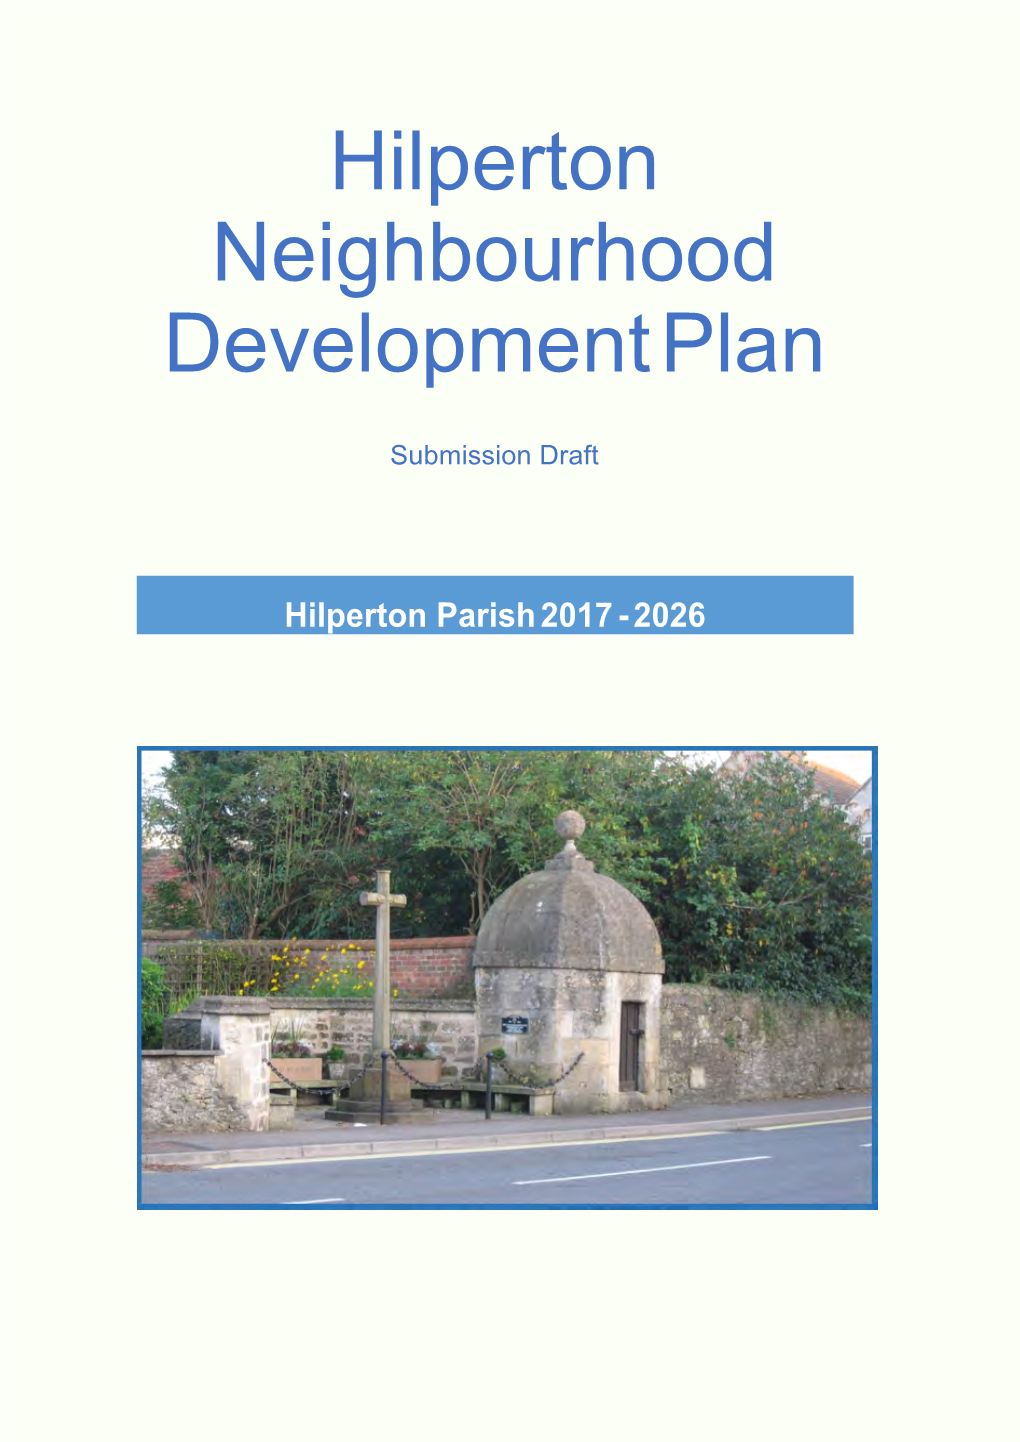 Hilperton Neighbourhood Development Plan